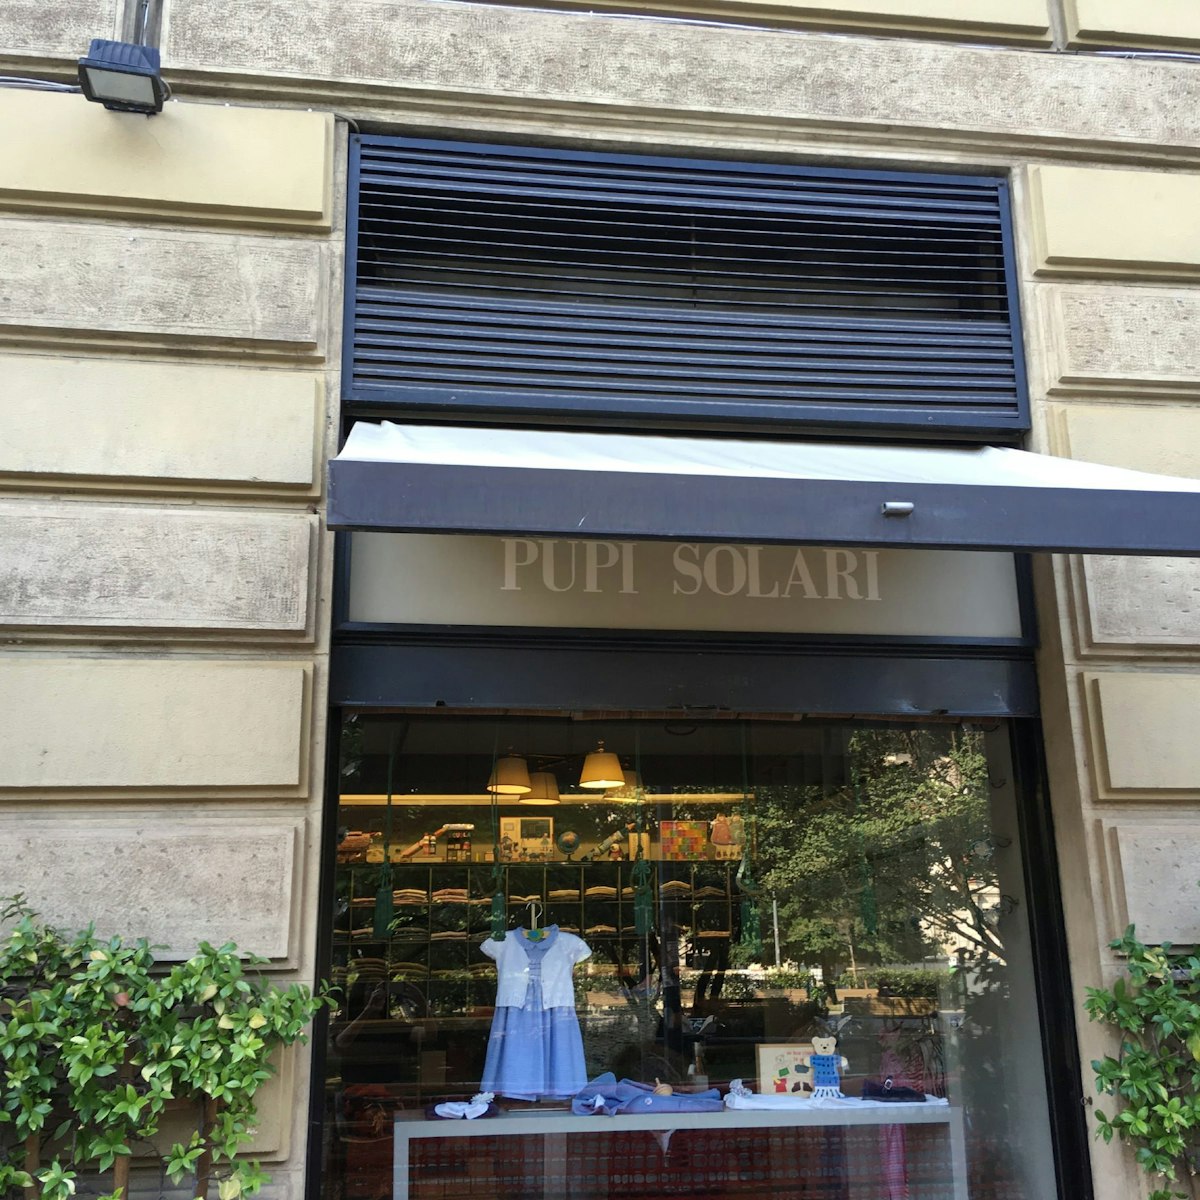 Pupi Solari shop window